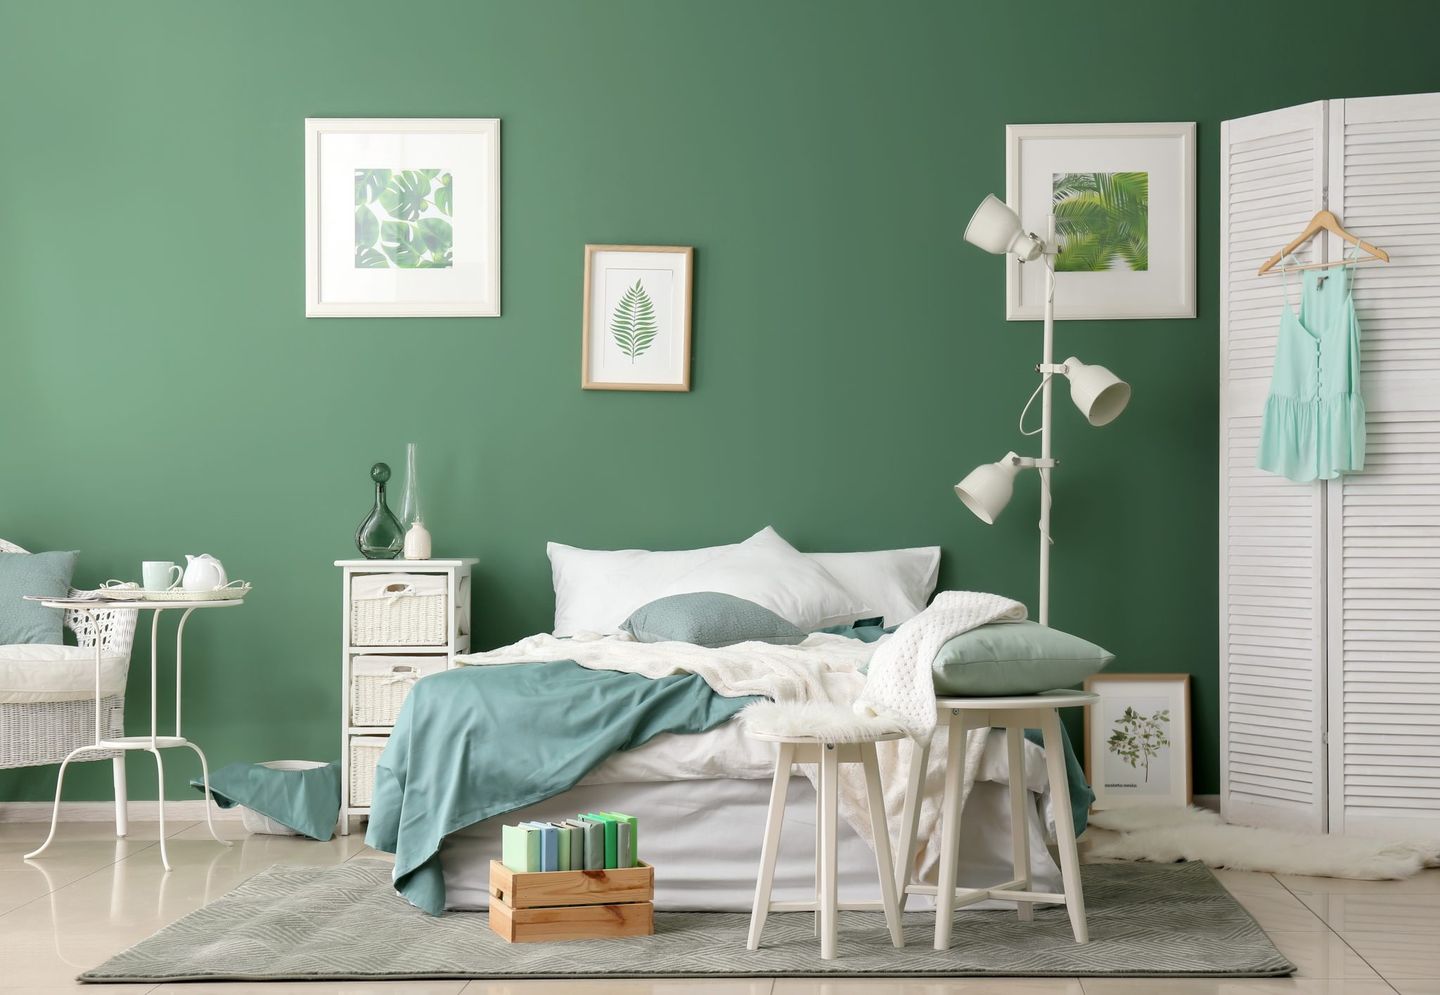 Warna cat kamar tidur yang menenangkan hijau membuat sejuk dan asri pada ruangan.